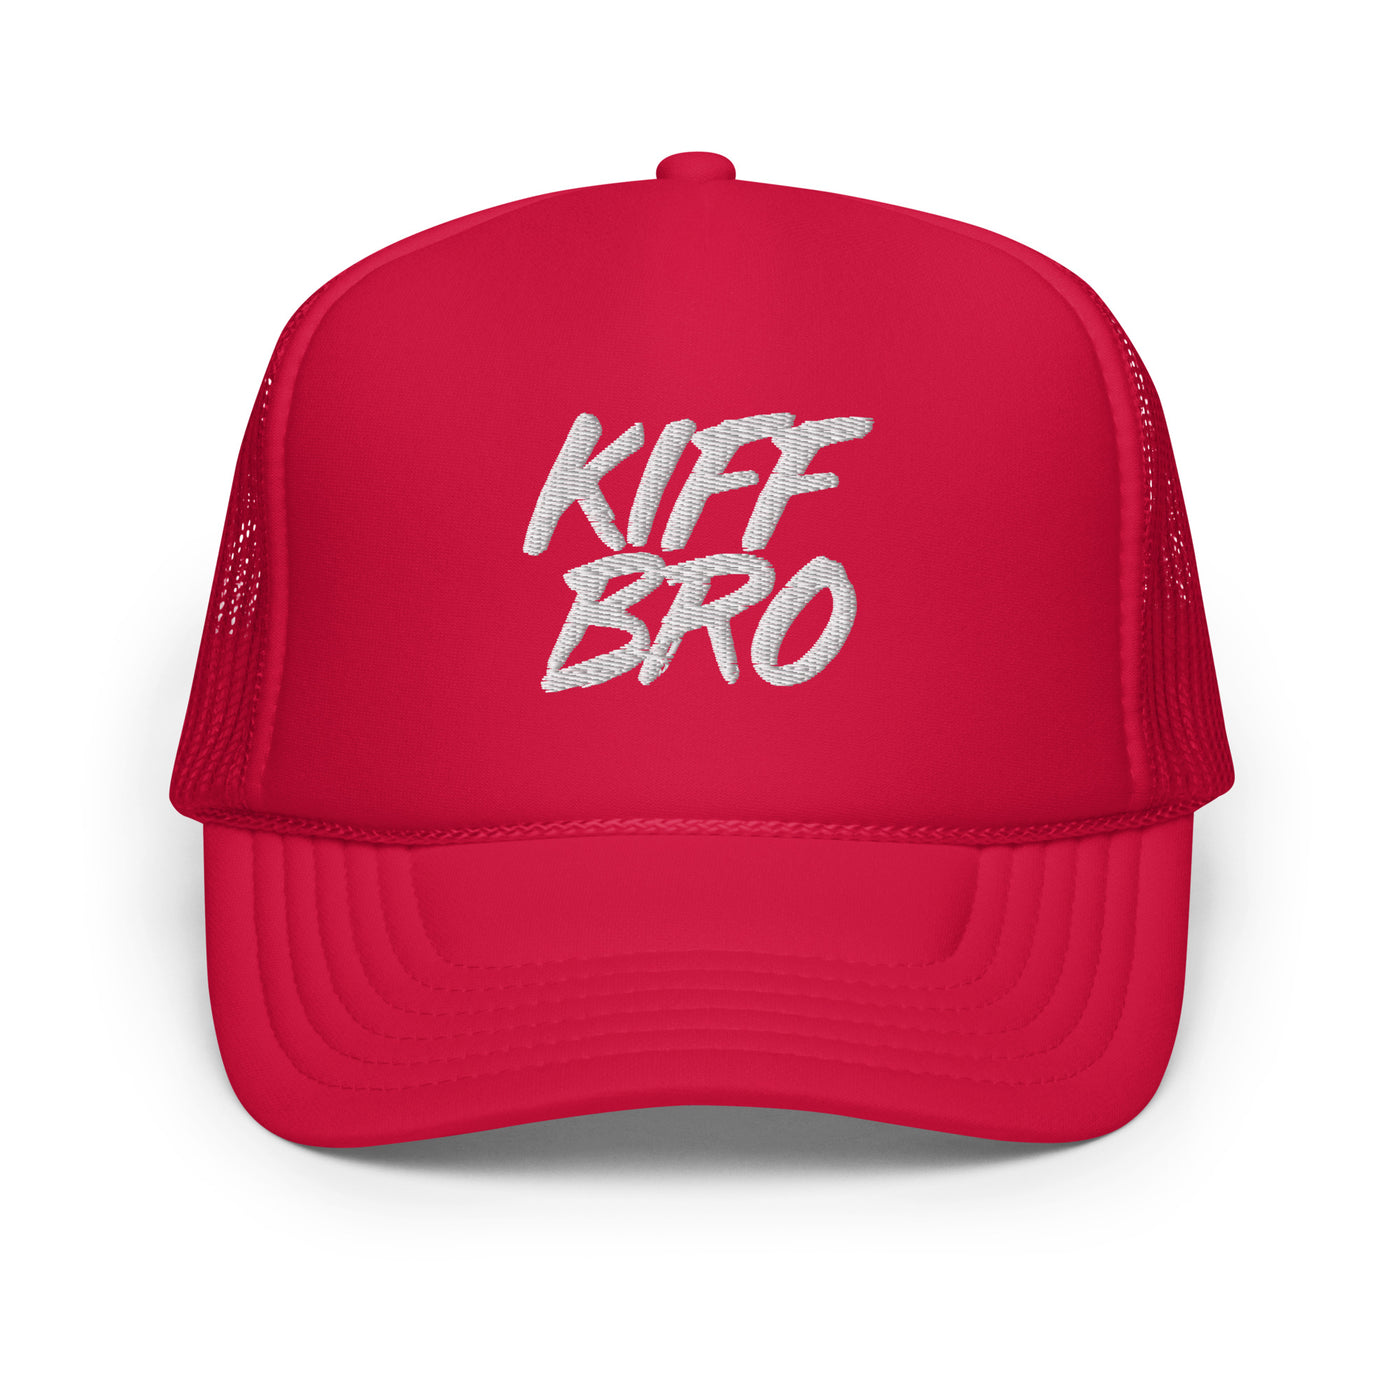 Kiff Bro Foam Trucker Hat